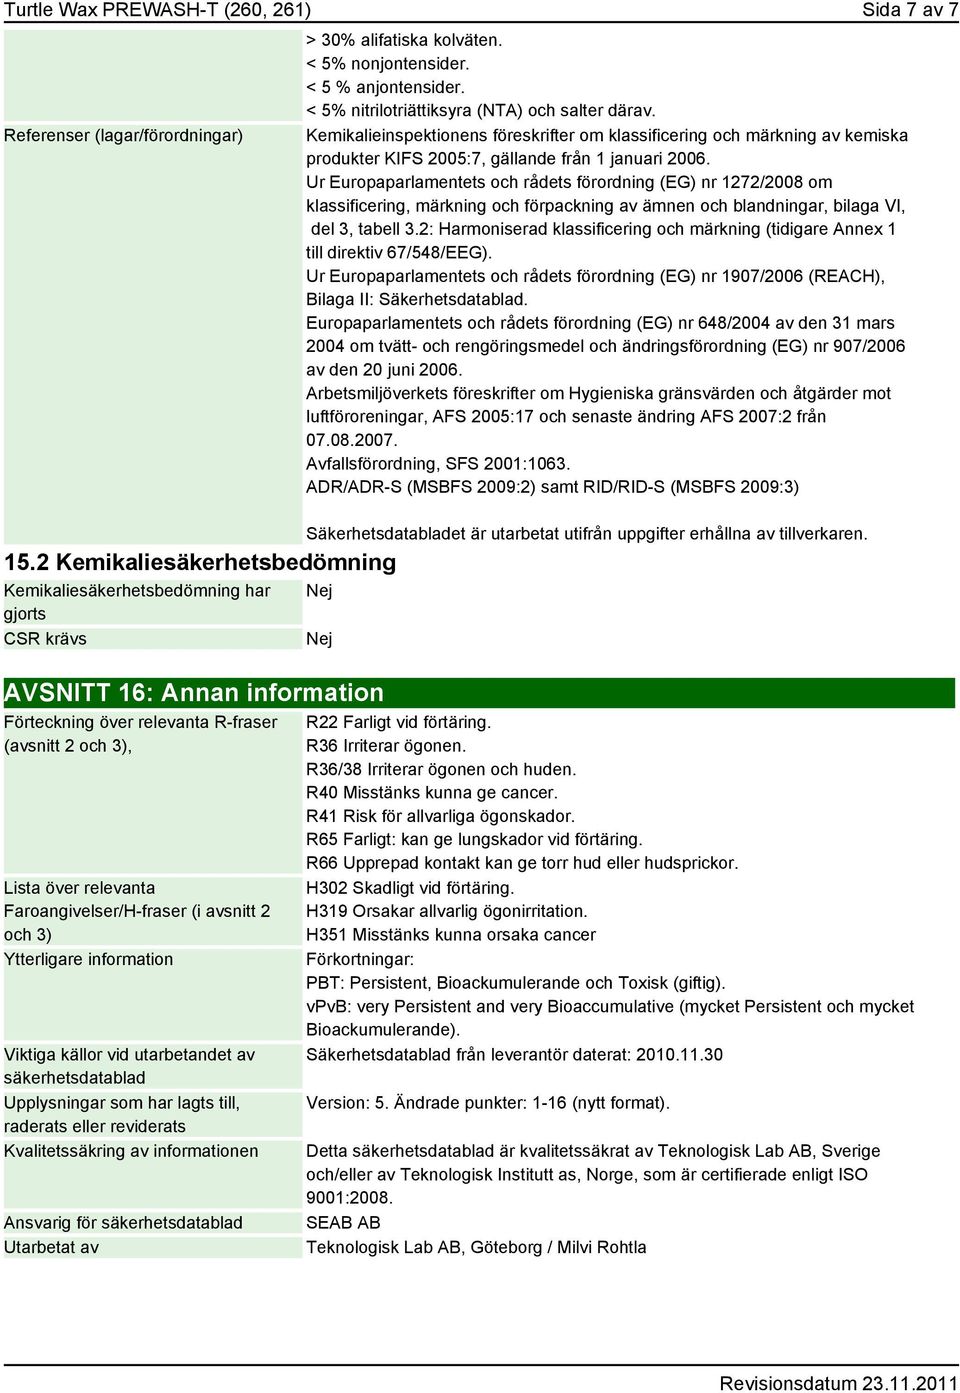 Kemikalieinspektionens föreskrifter om klassificering och märkning av kemiska produkter KIFS 2005:7, gällande från 1 januari 2006.